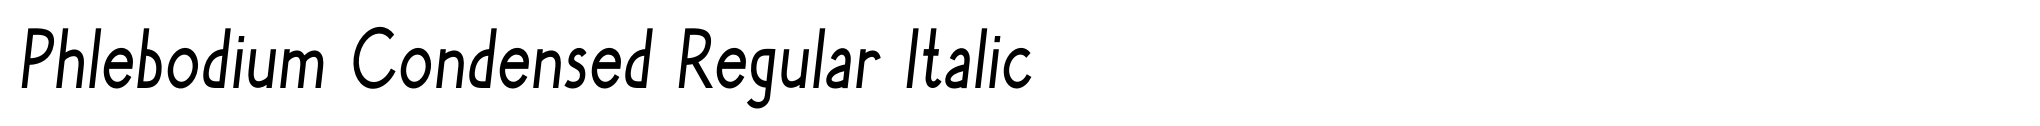 Phlebodium Condensed Regular Italic image